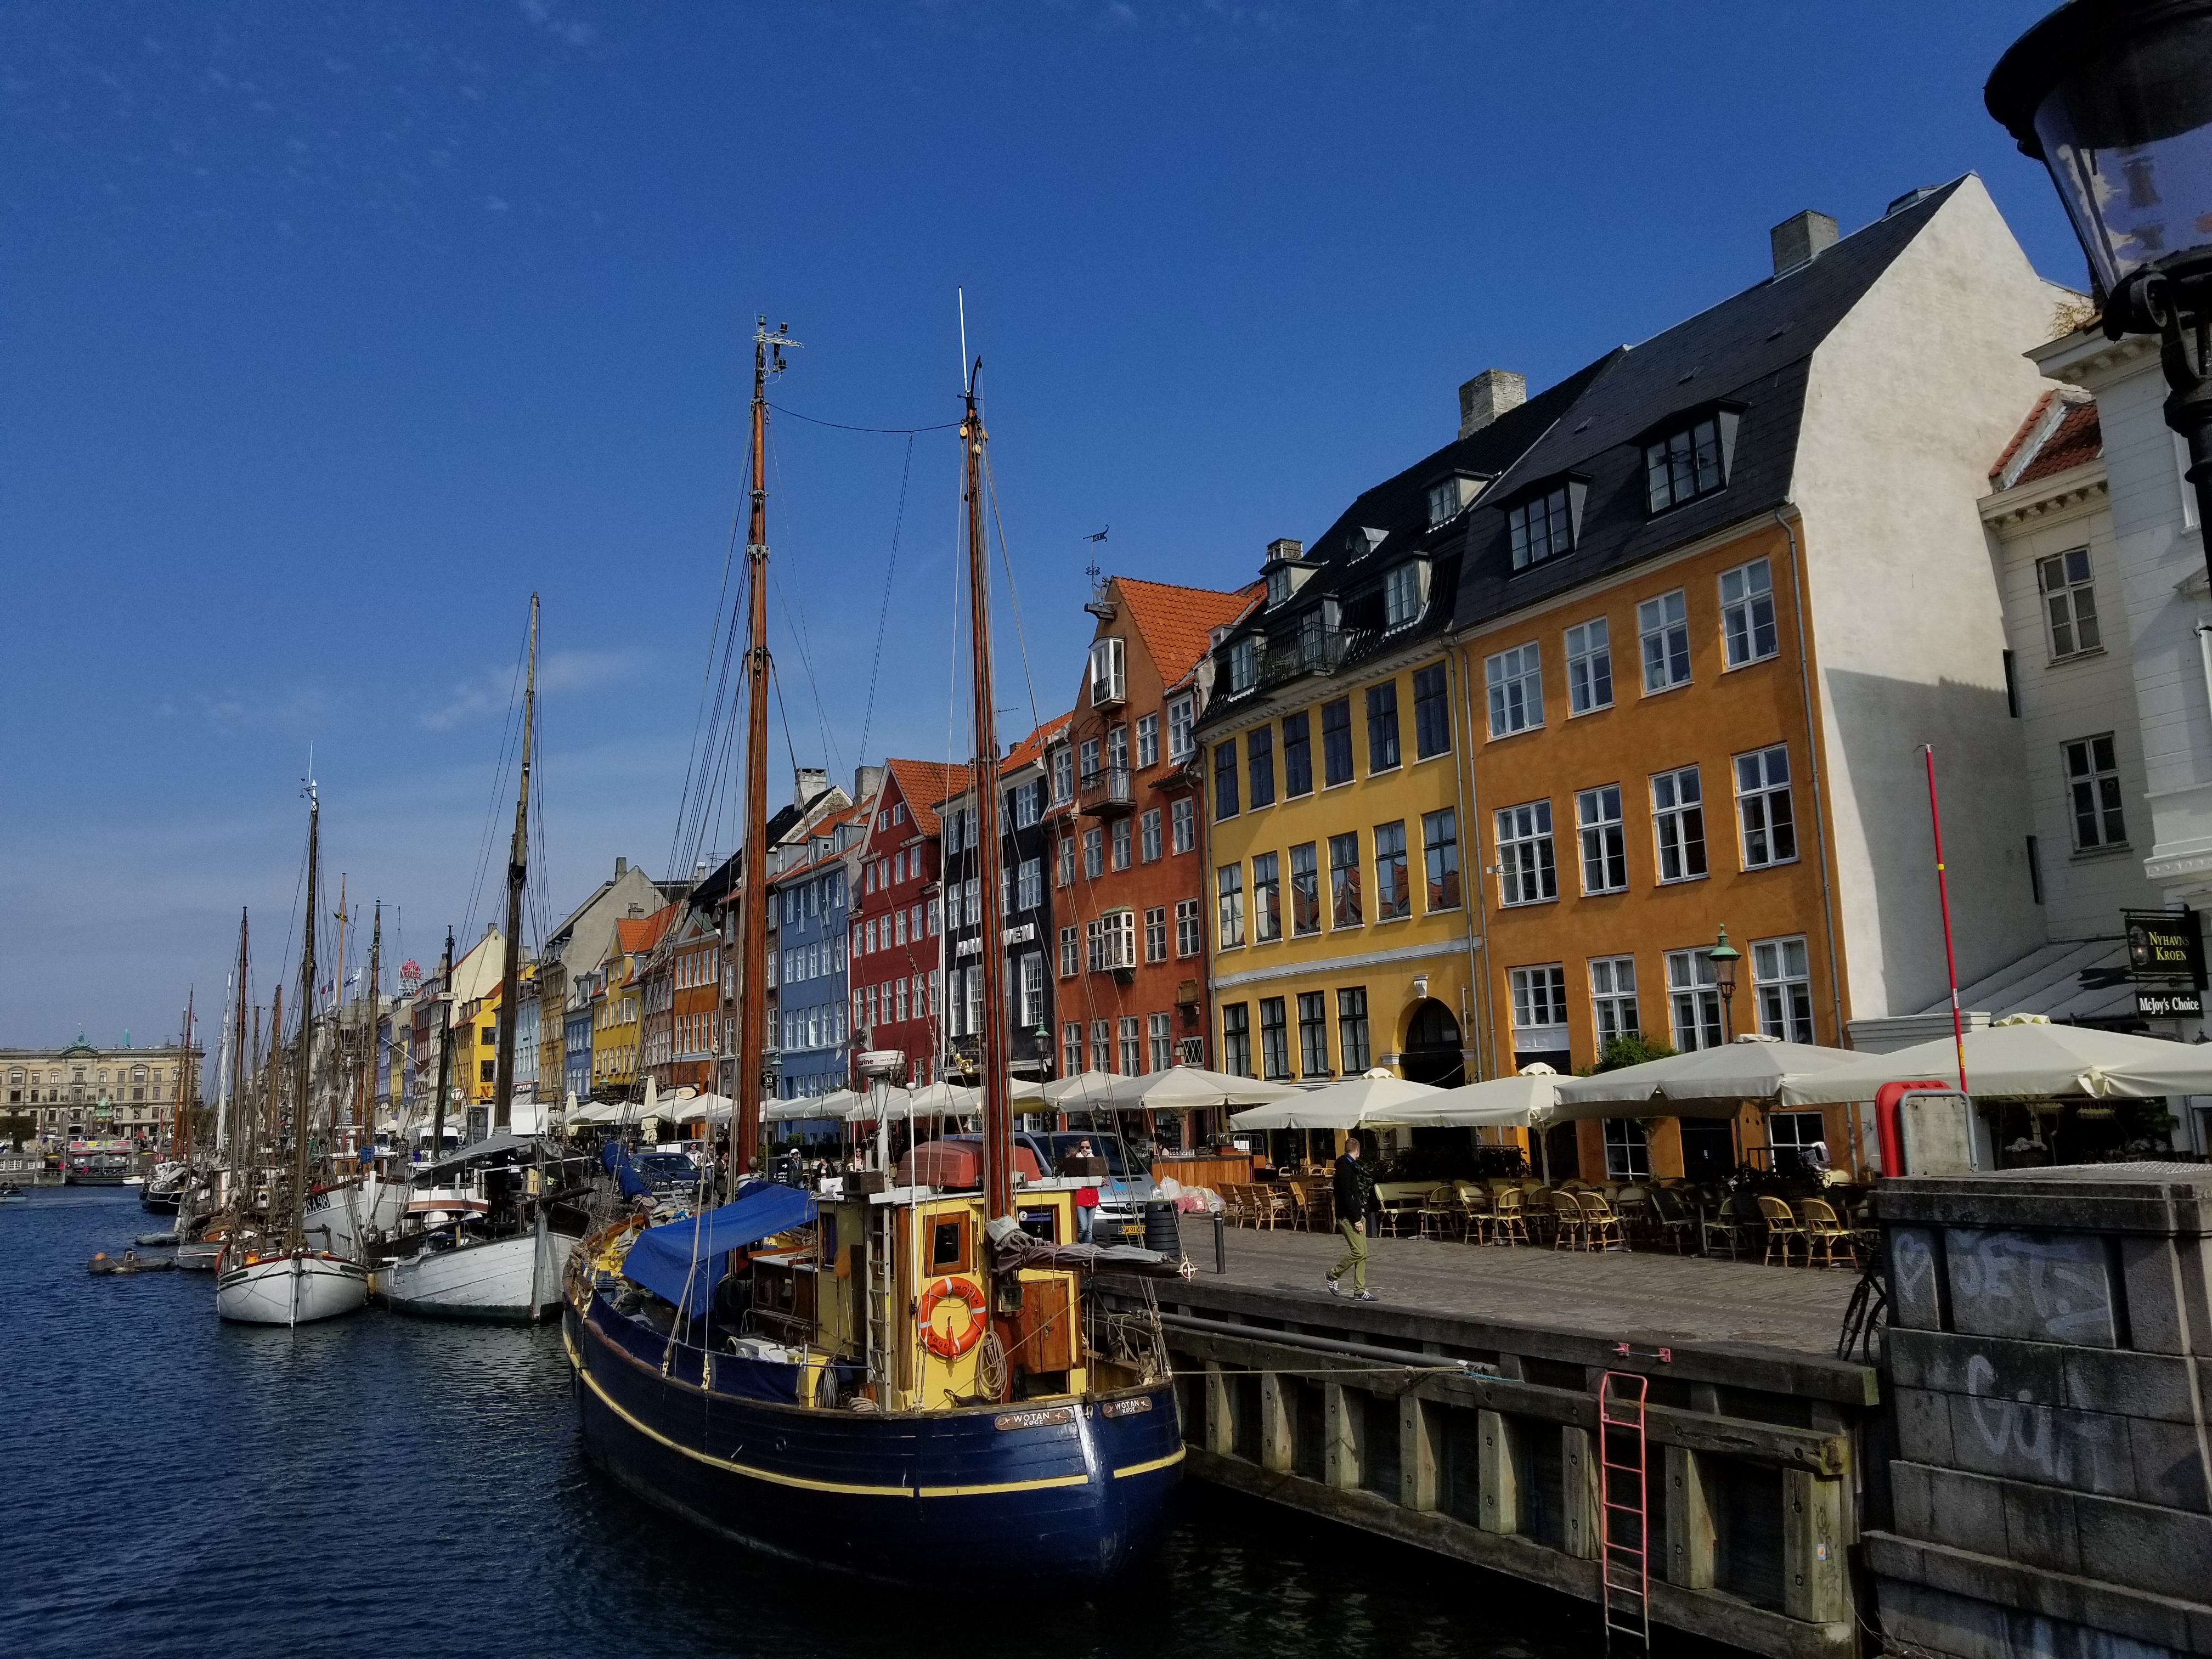 Hyggelig 6: A Copenhagen Miscellany